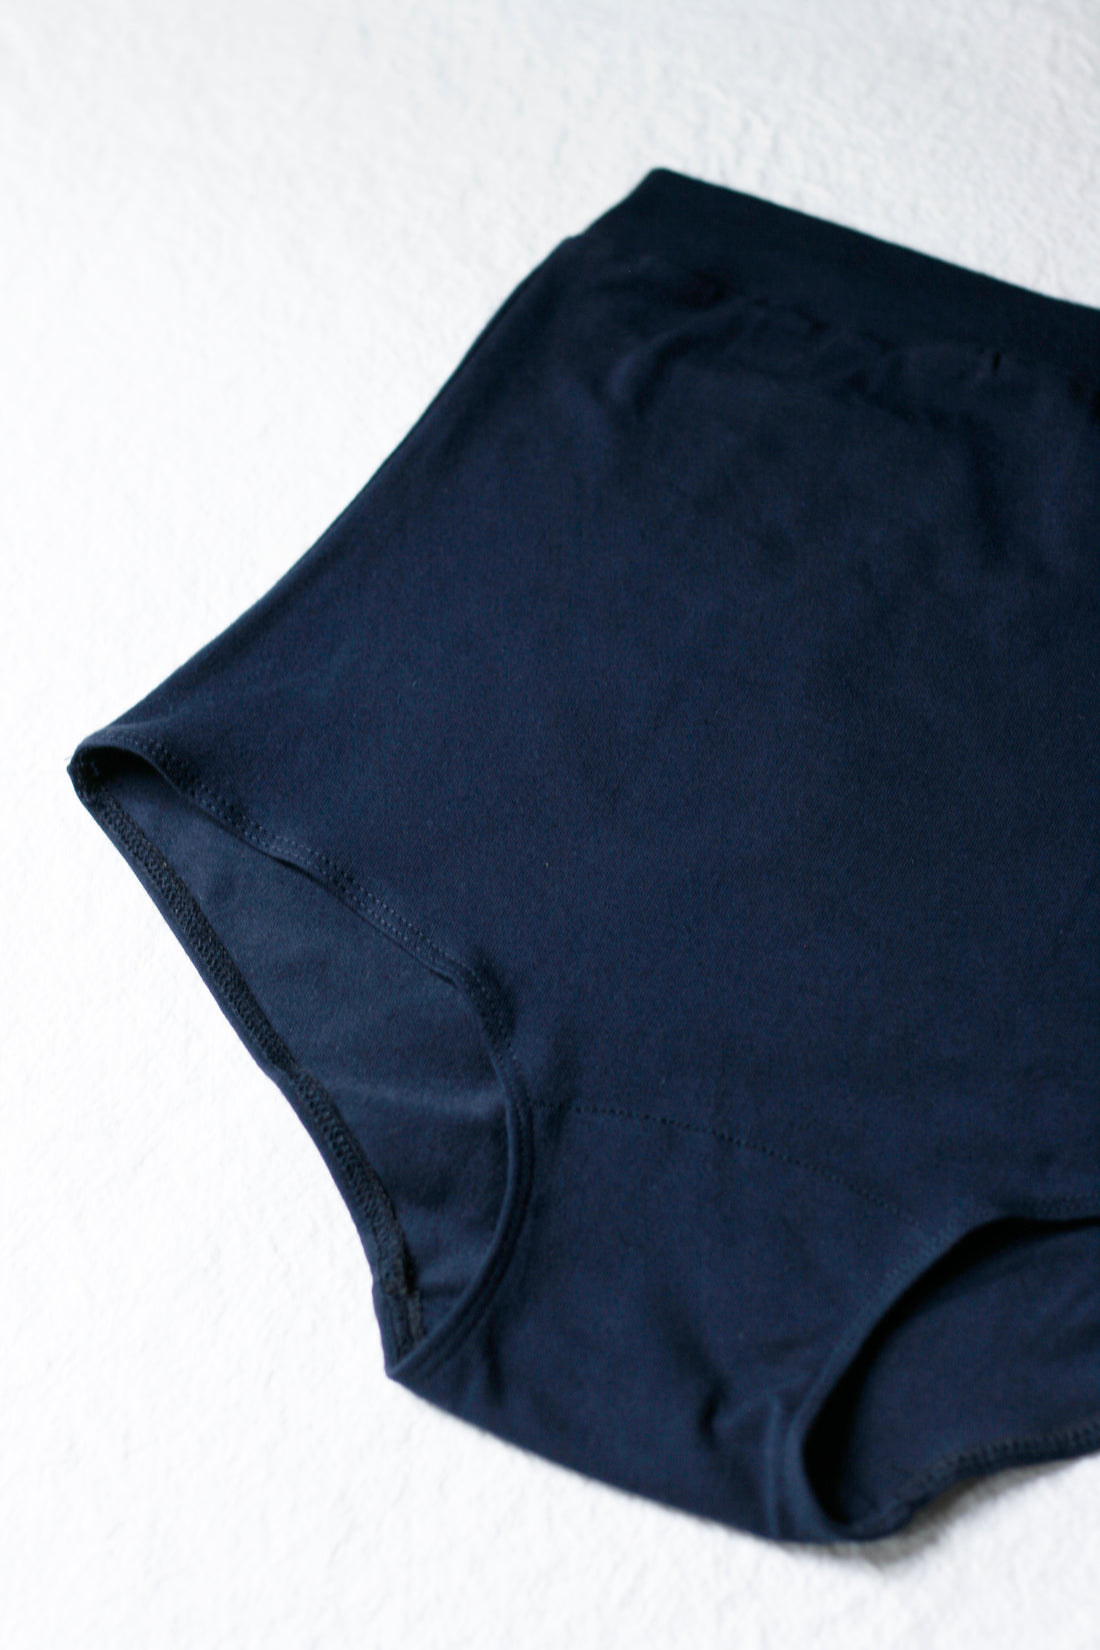 High-waist underwear No6076w, neutrals – atelier b